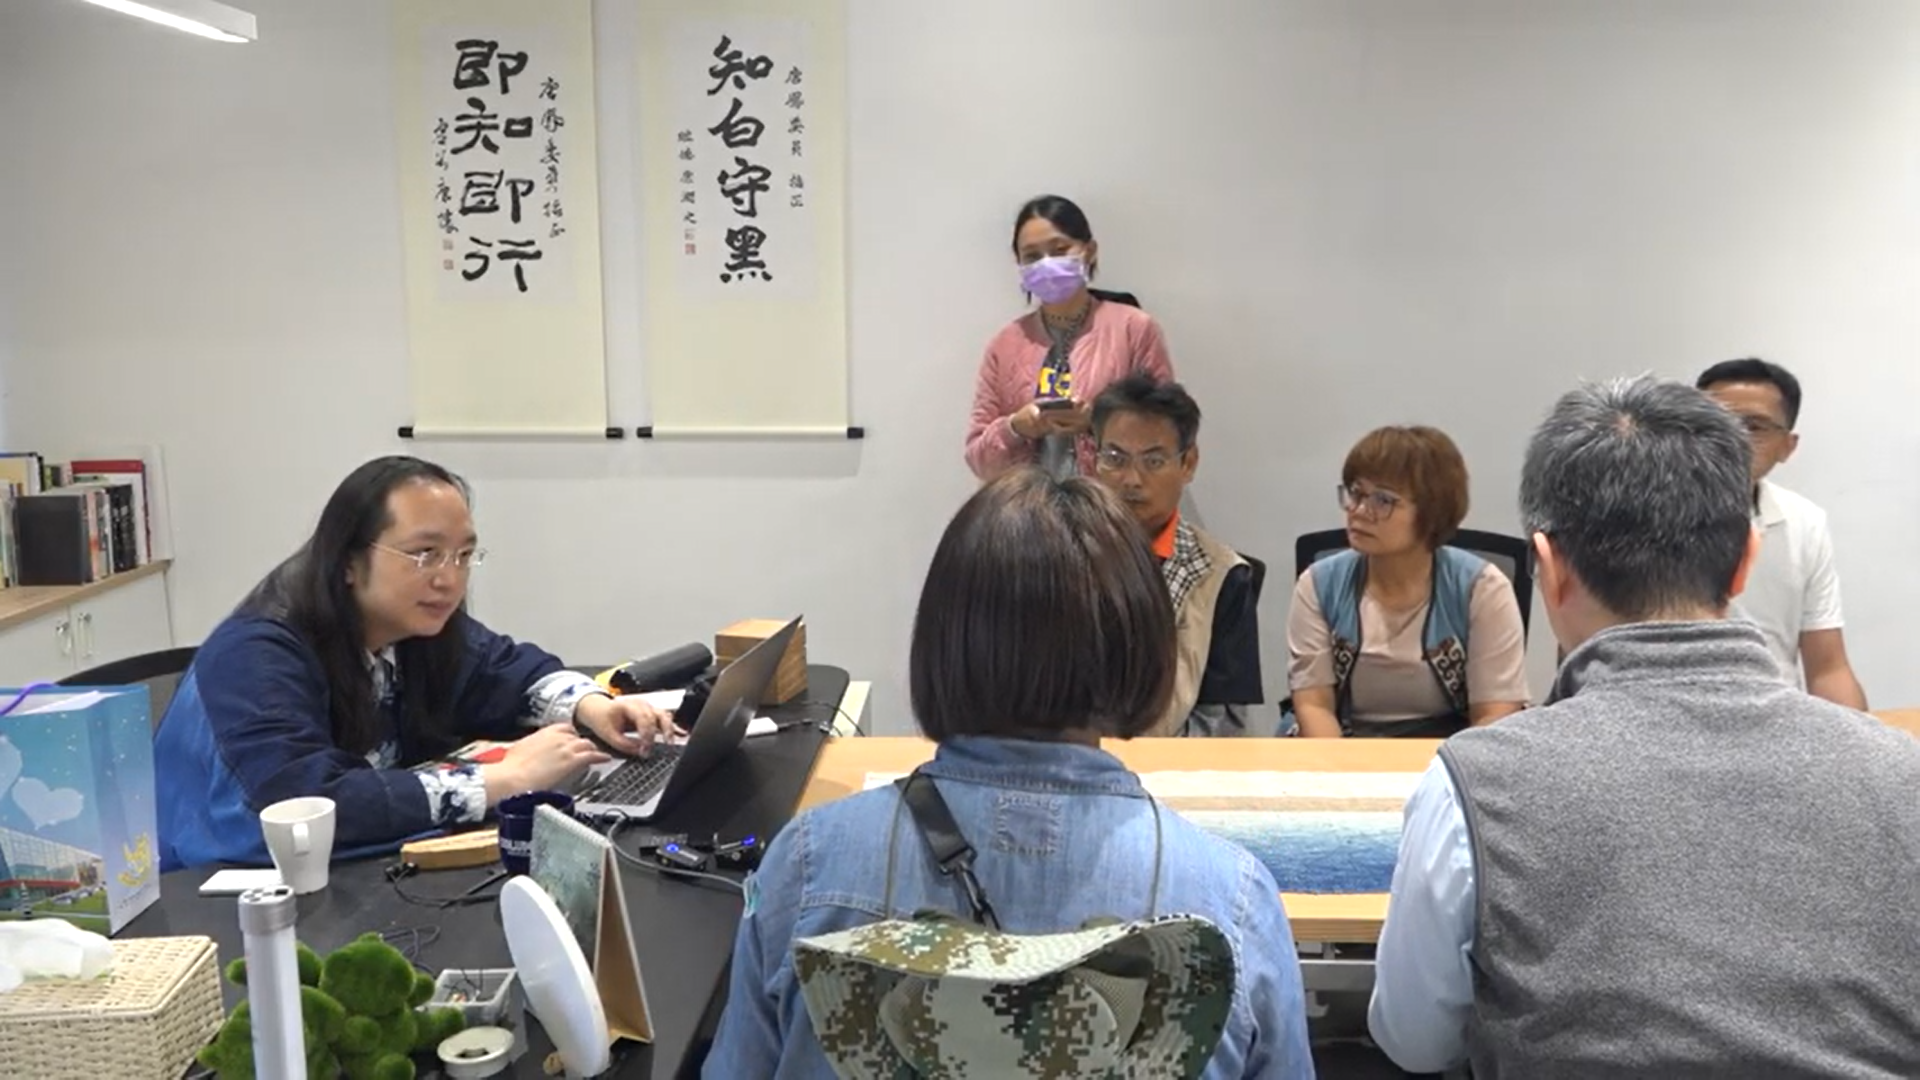 오드리 탕 장관의 ‘열린 사무실’. 감염병 단계가 2단계로 격상되기 전까지 매주 수요일 시민에게 개방하고, 장관과 대면 면담을 진행했다. (제공: 타이완 공공디지털혁신공간)